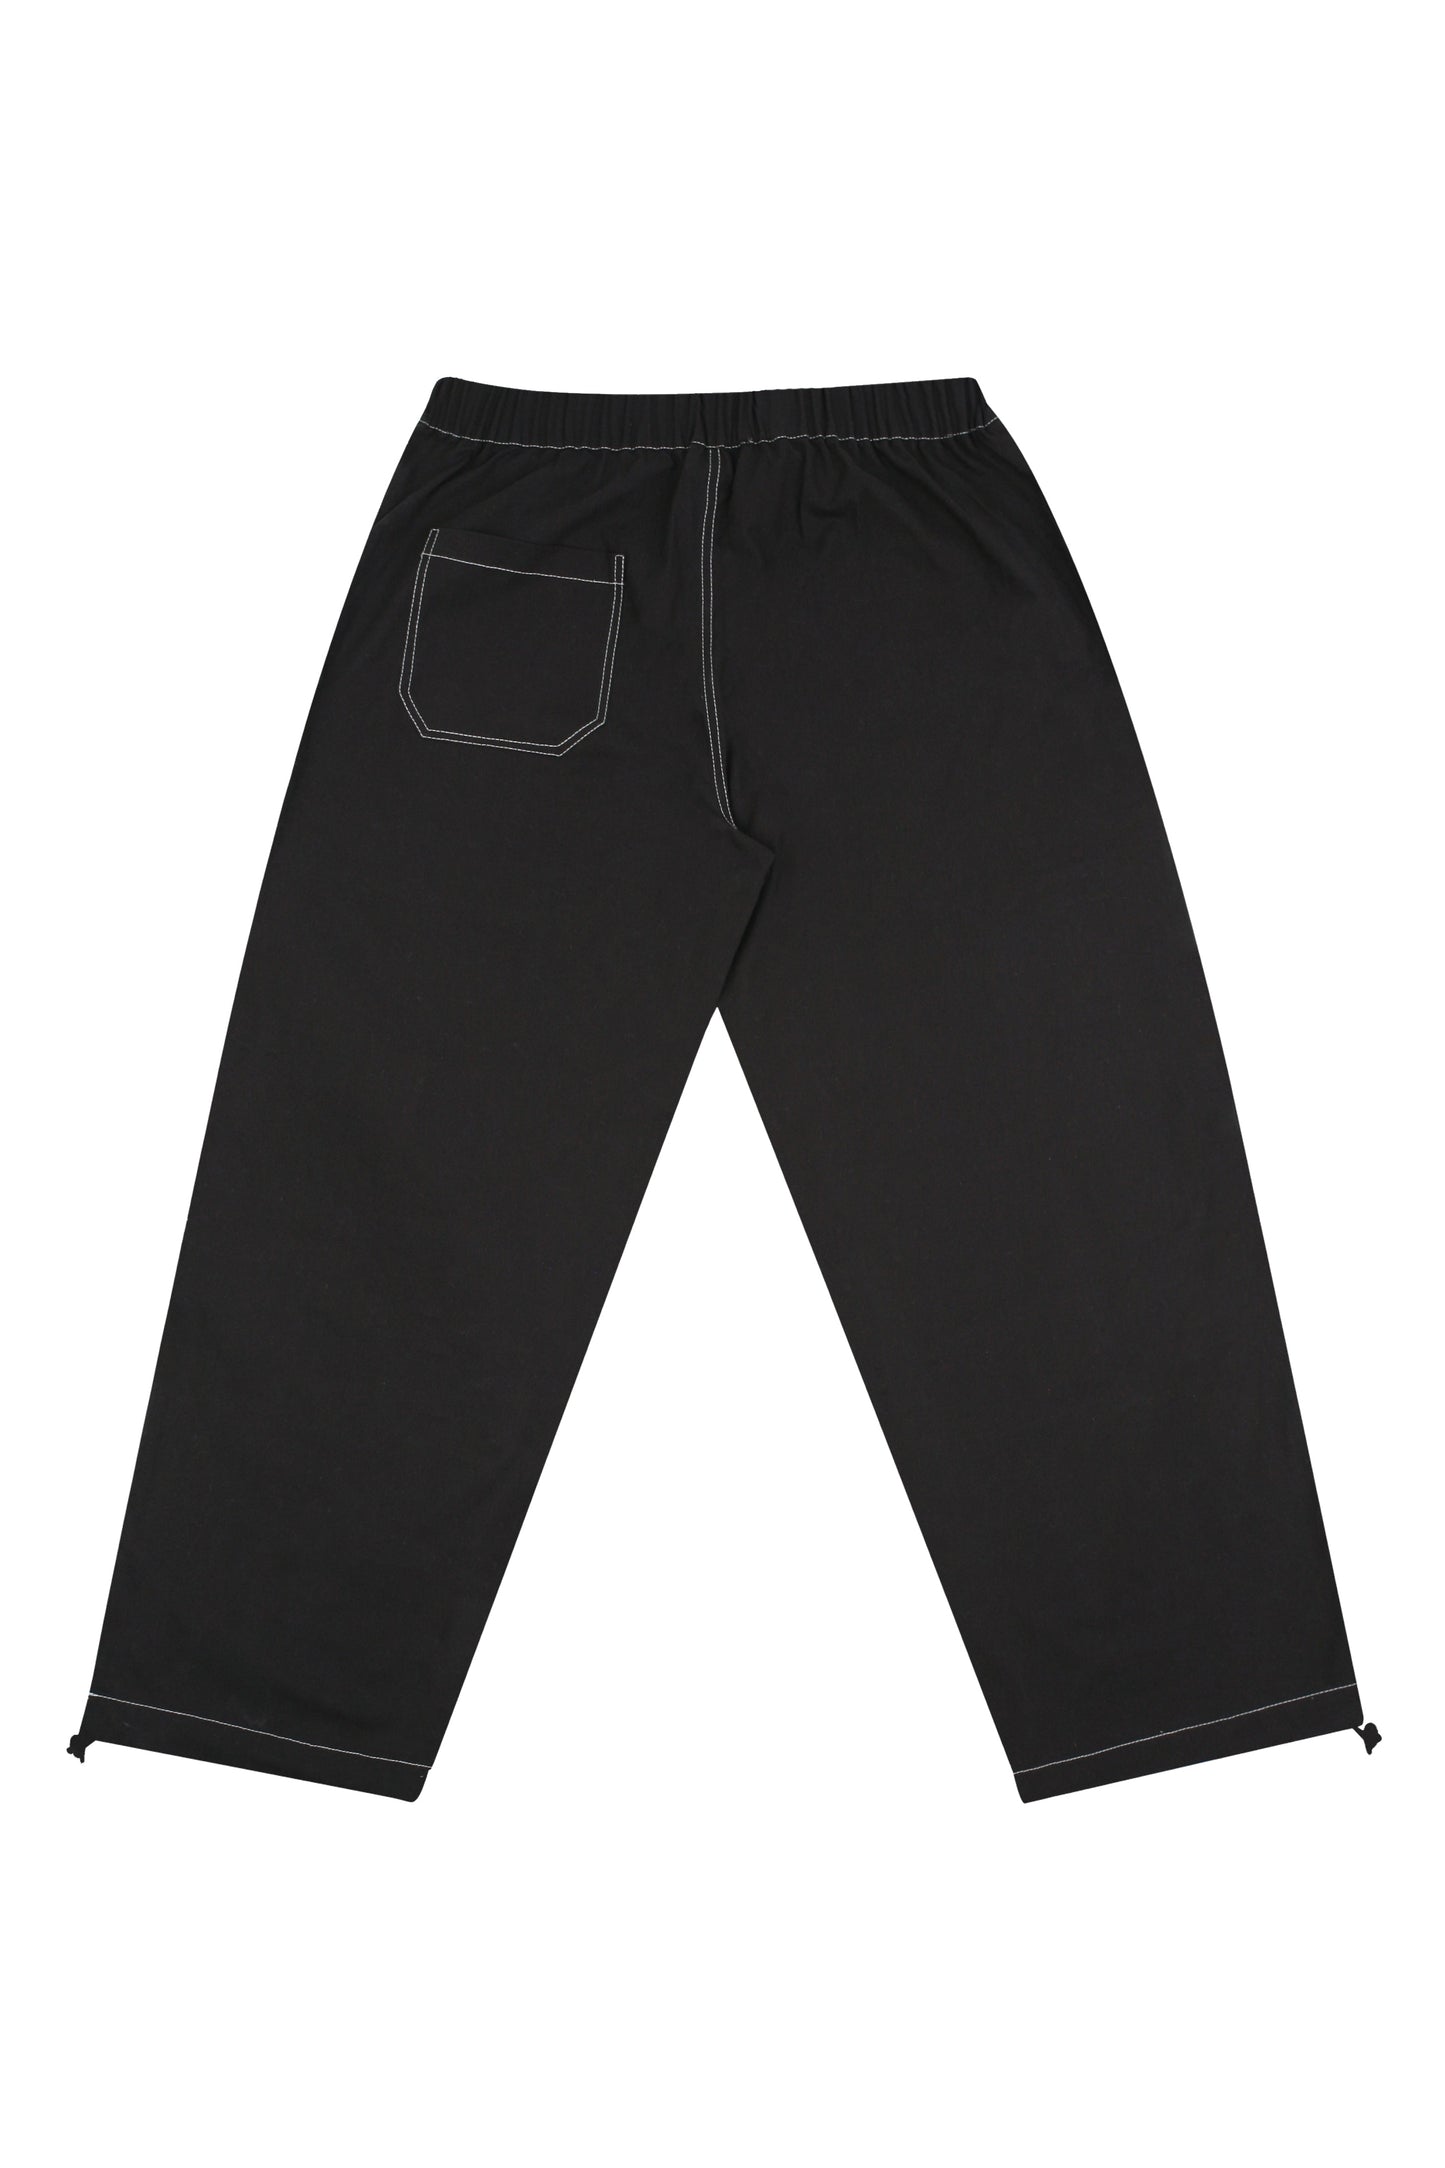 Outdoor Pants (Black)